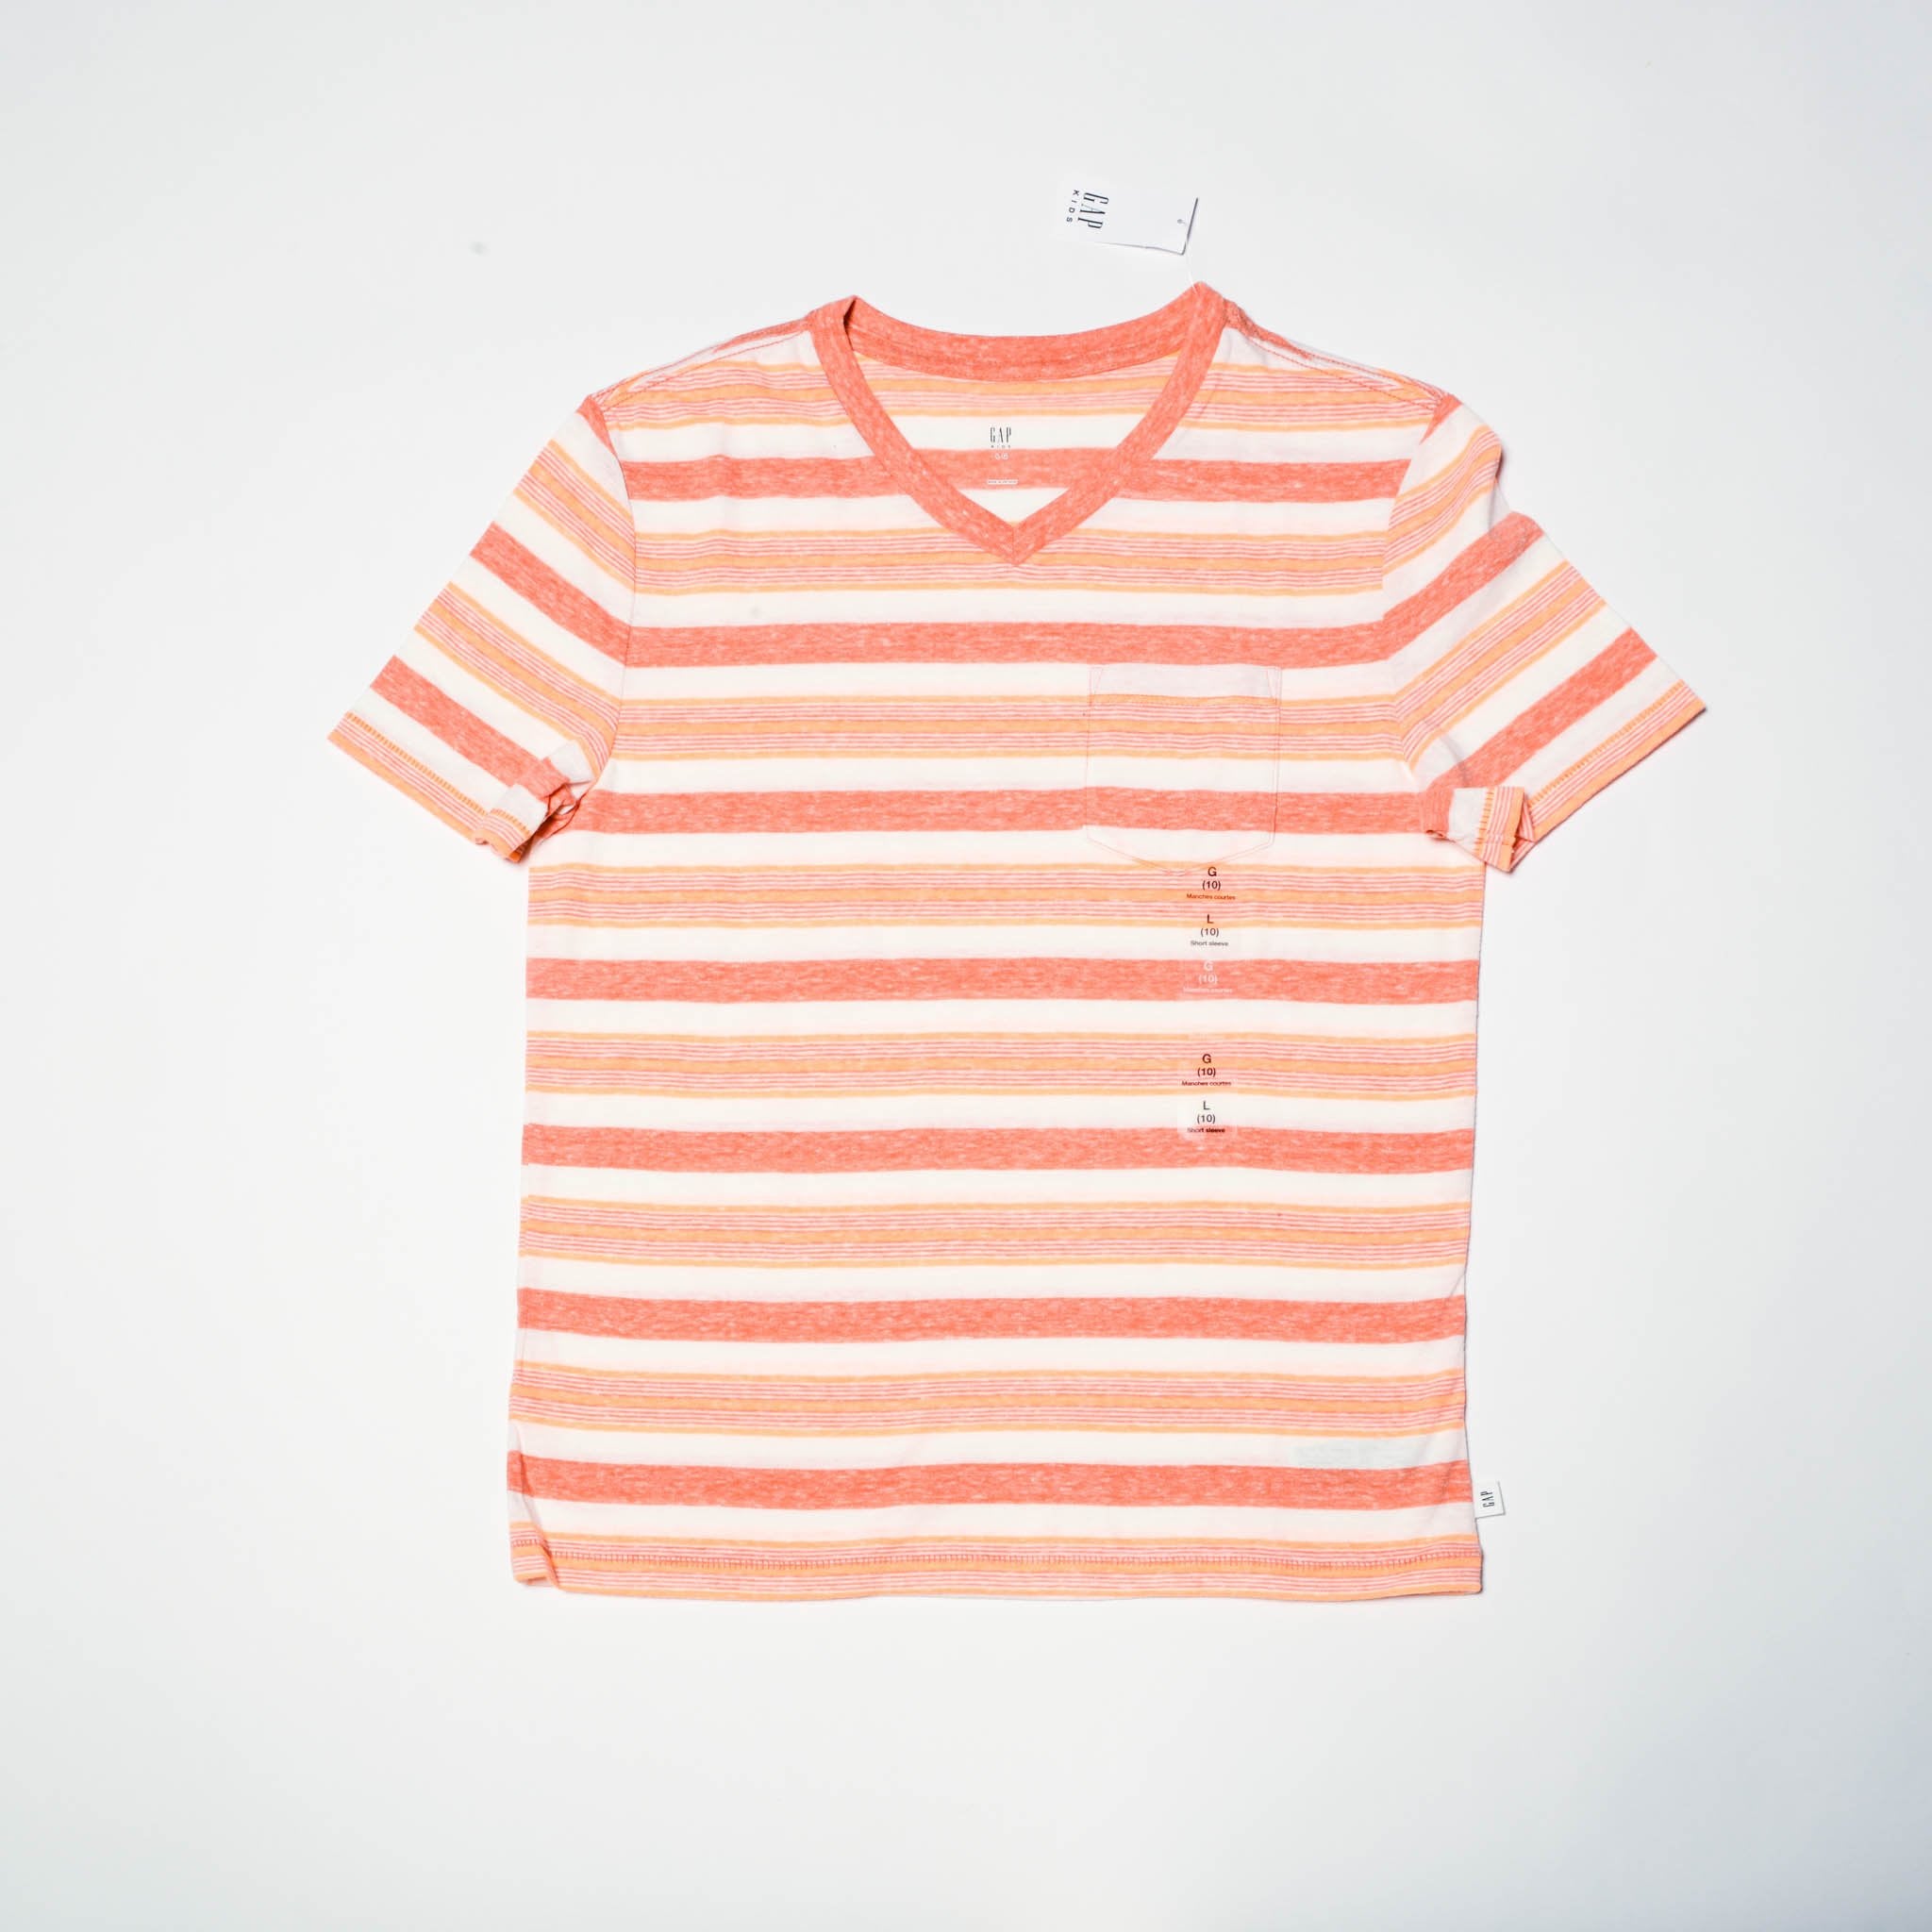 Striped T-Shirt - M, L